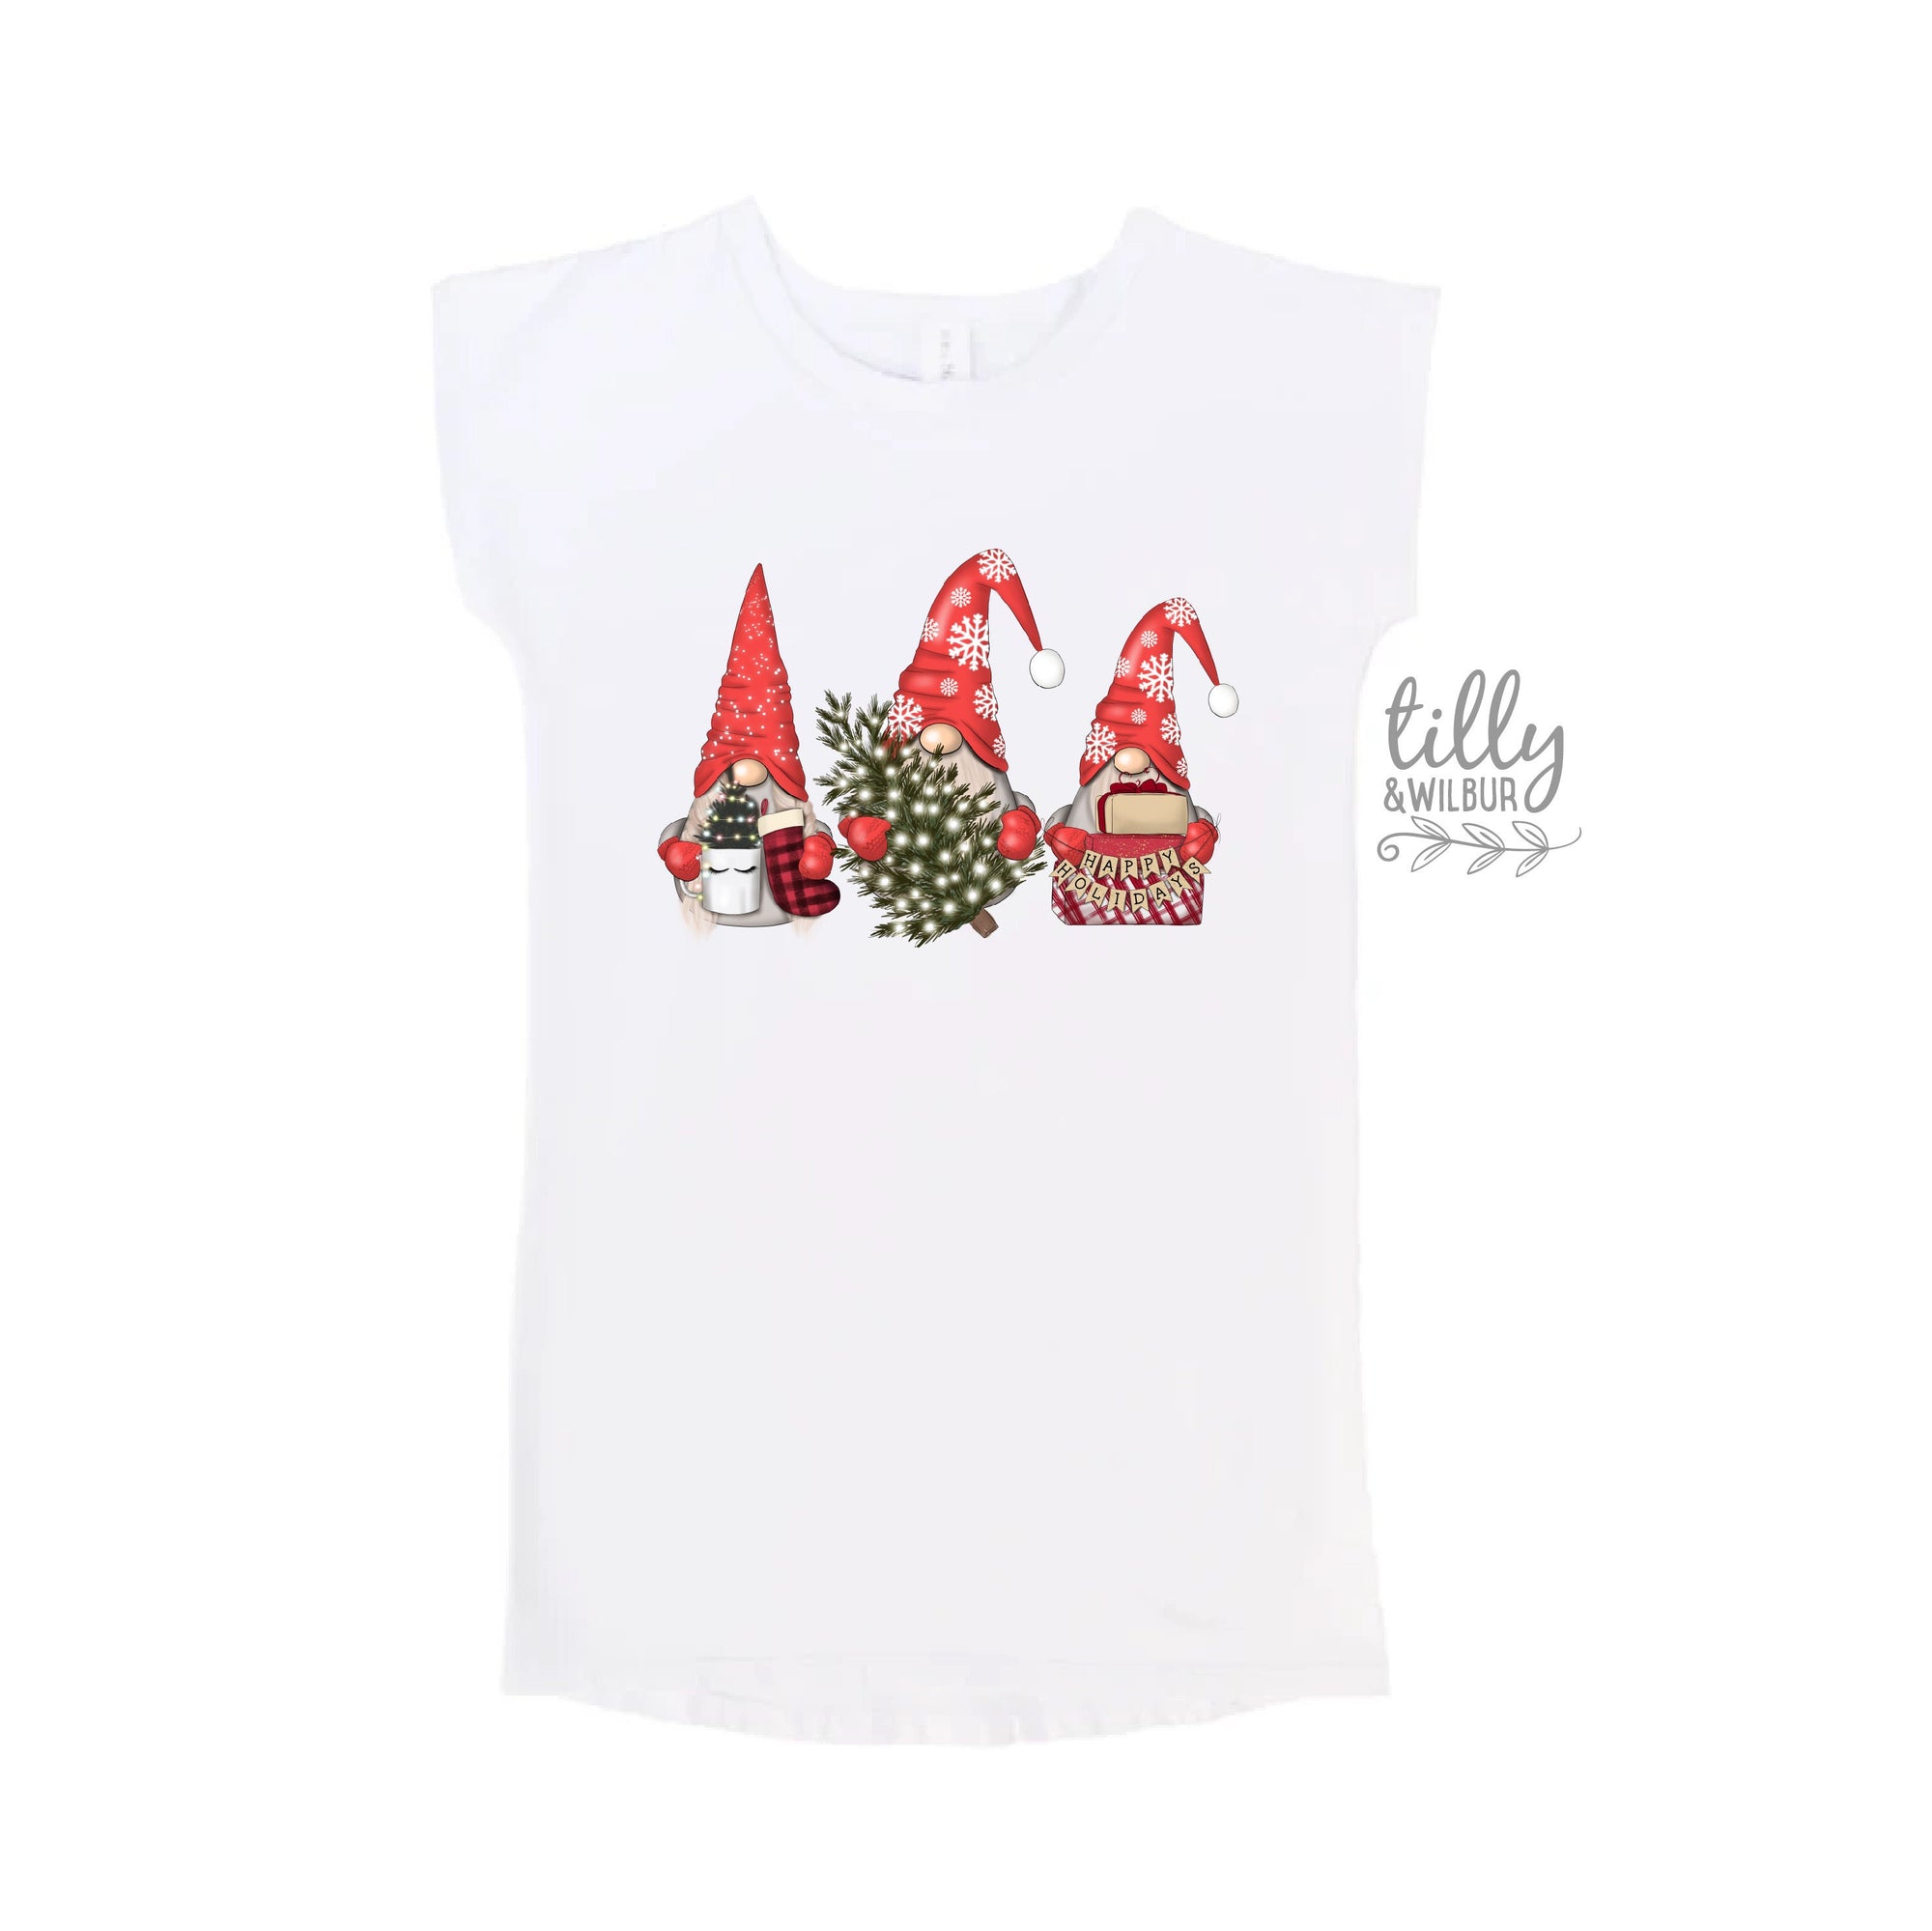 Gnome Dress, Christmas Dress, Matching T-Shirts, Matching Christmas Shirts, Matching Gnome T-Shirts, Matching Christmas Family Shirts, Xmas